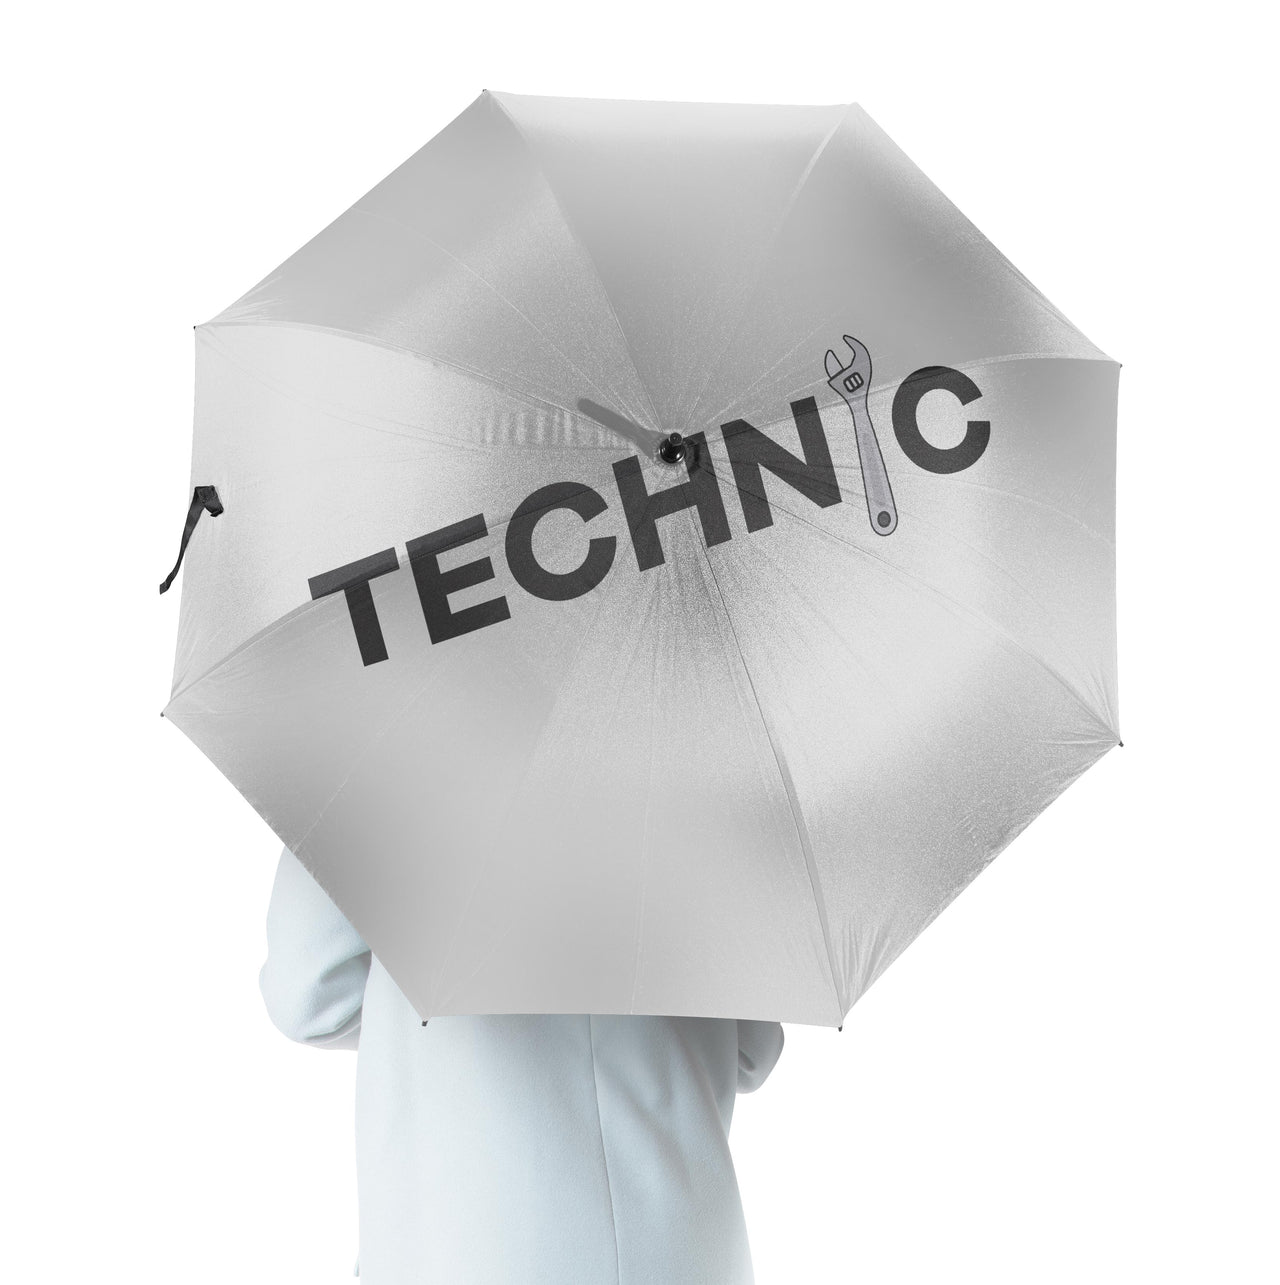 Technic Designed Umbrella